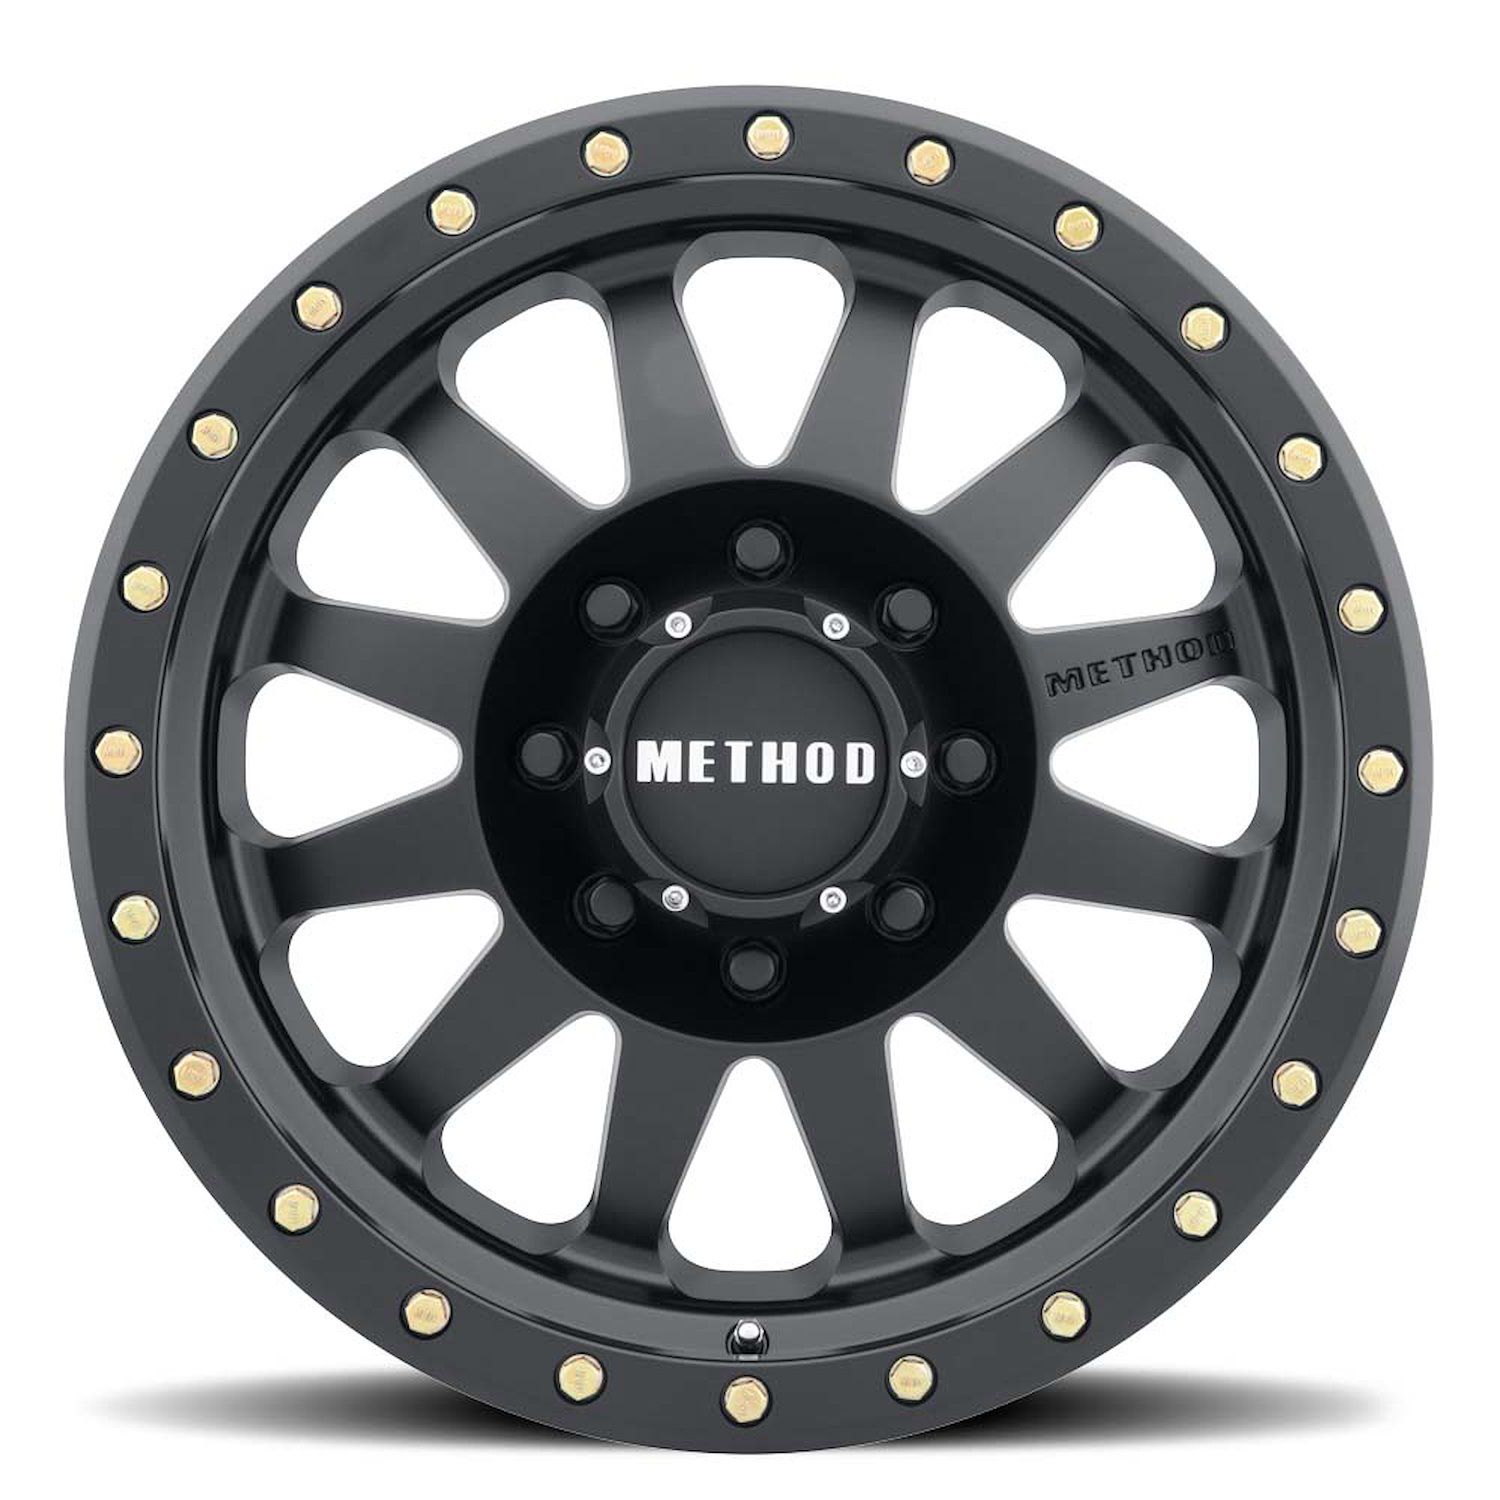 MR30489080518 STREET MR304 Double Standard Wheel [Size: 18" x 9"] Matte Black